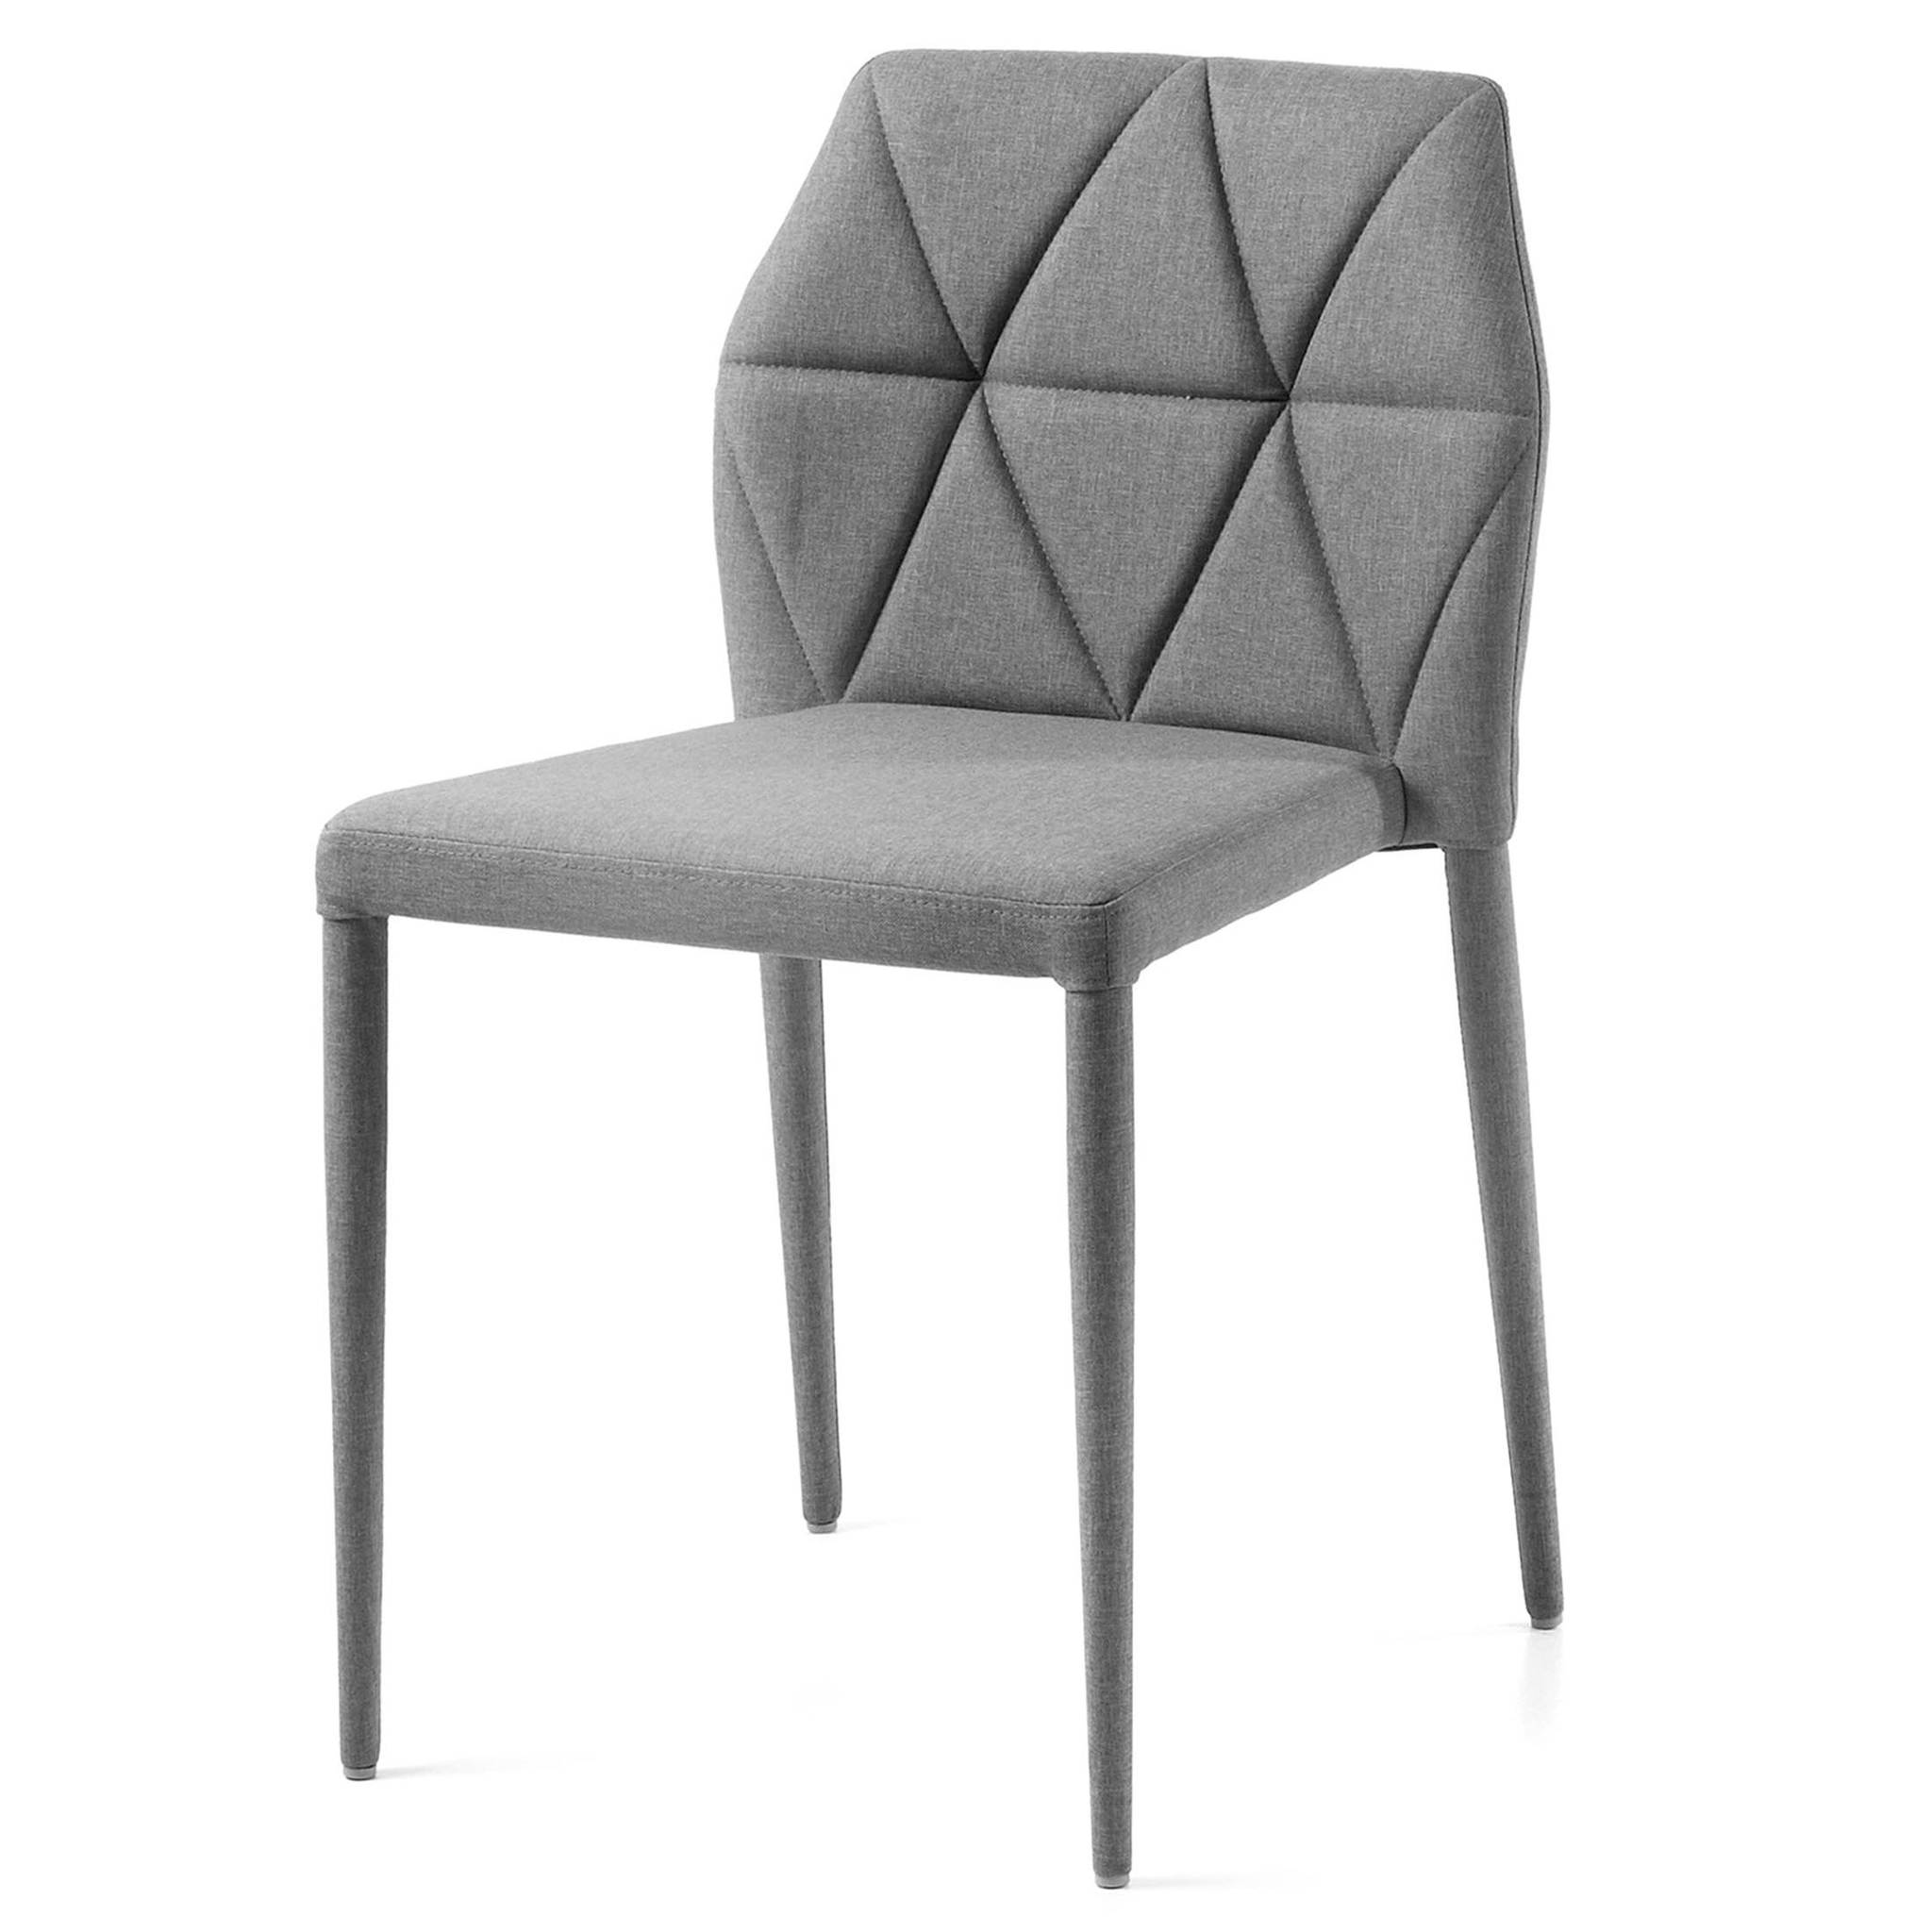 Купить стулья в тамбове. Стул la forma (ex Julia grup) Lars. Стул gravite серый. La forma стулья. Стул Риоха.